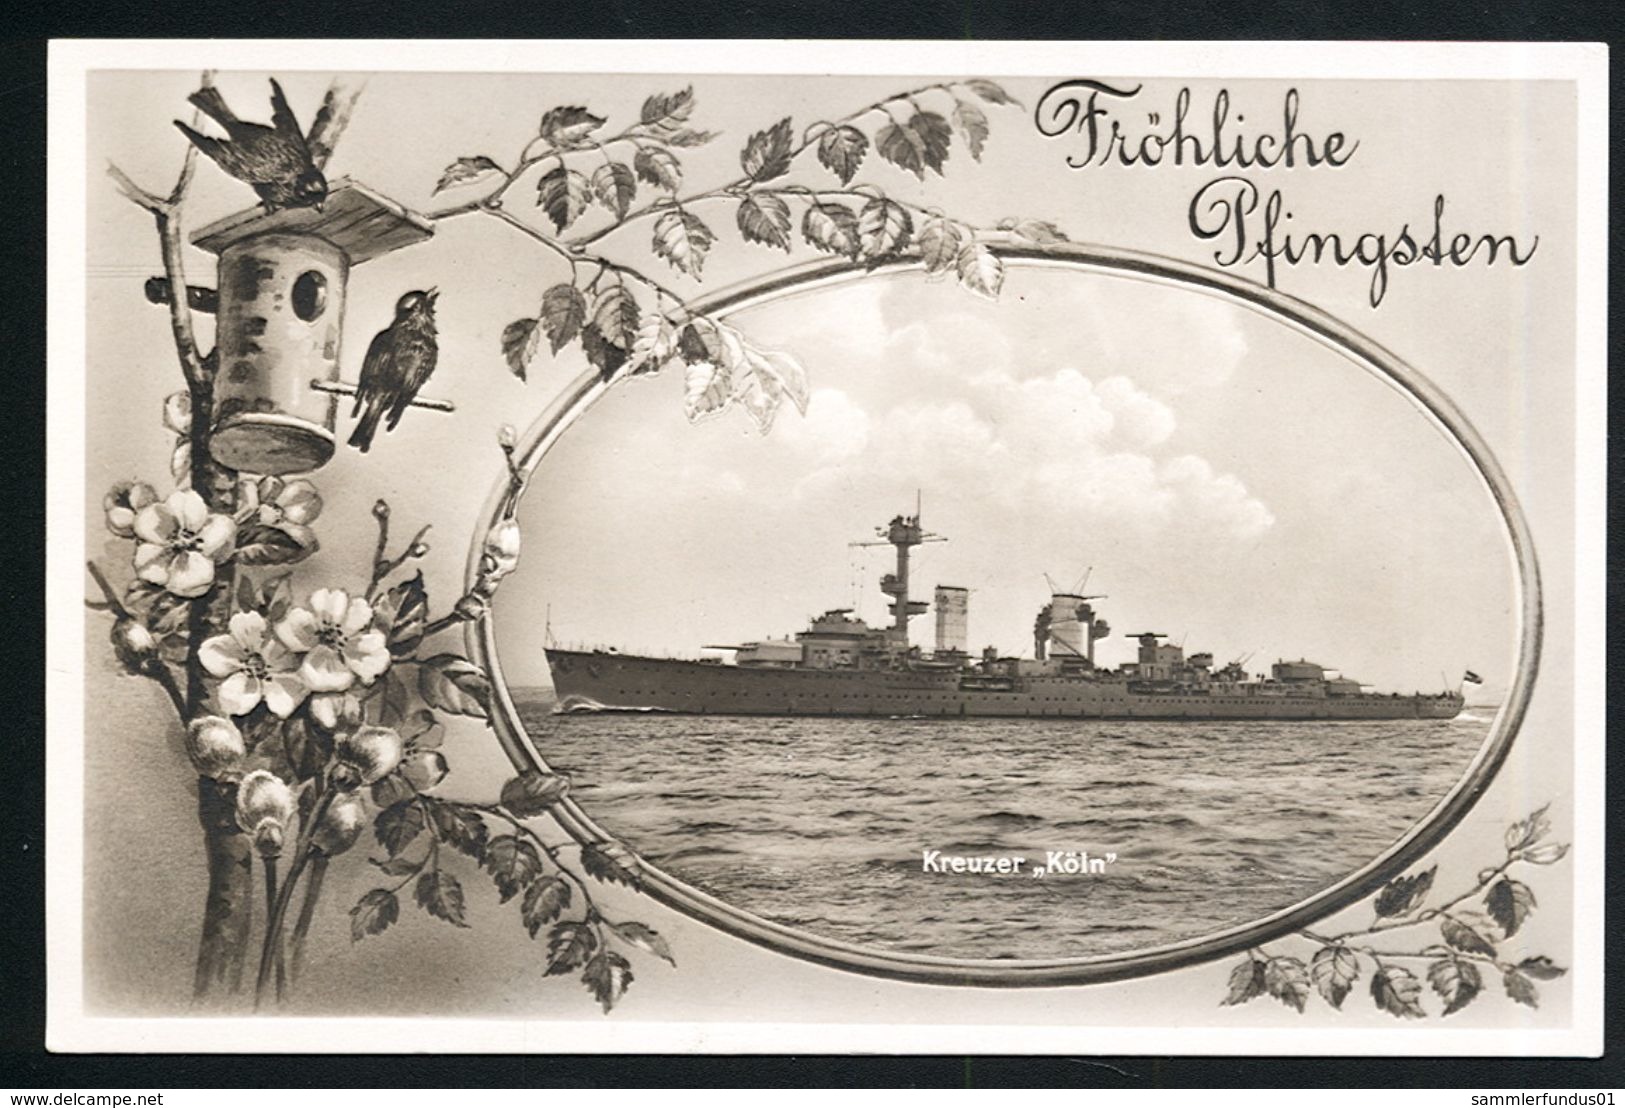 AK/CP Marine Kreuzer Köln  Reichsmarine  German Navy    Ungel/uncirc. Ca. 1932    Erhaltung/Cond.  1- / 2    Nr. 00308 - Krieg